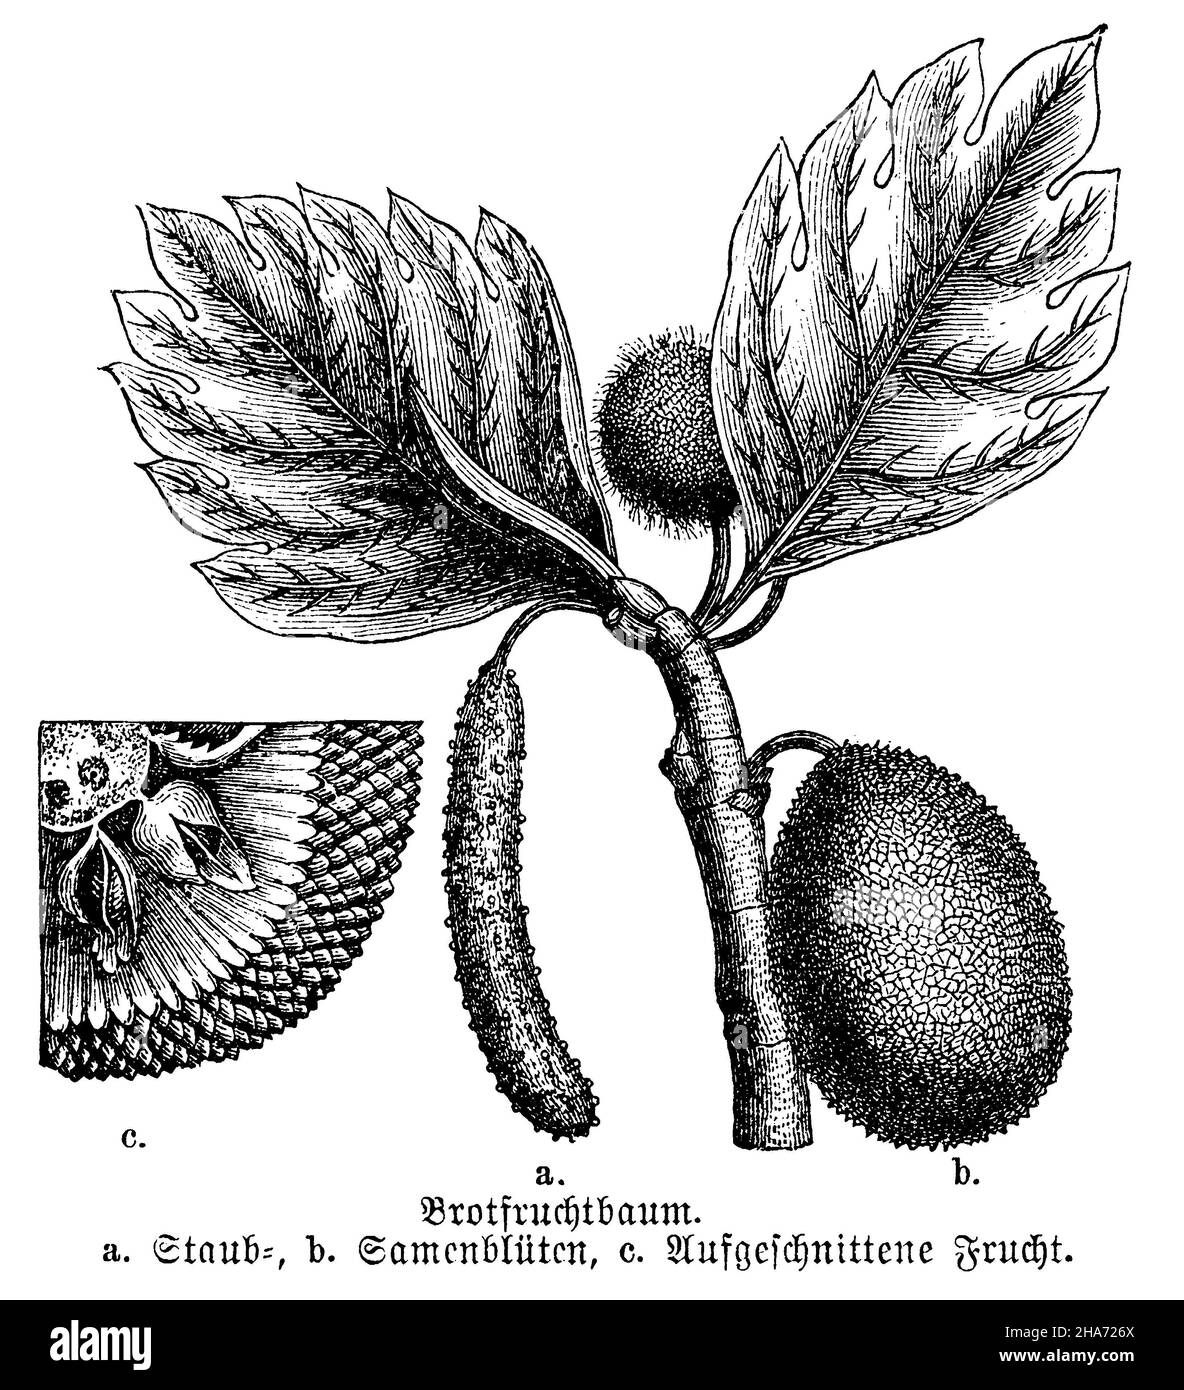 breadfruit , Artocarpus altilis Syn. Artocarpus communis, Artocarpus incisus,  (biology book, 1898) Stock Photo